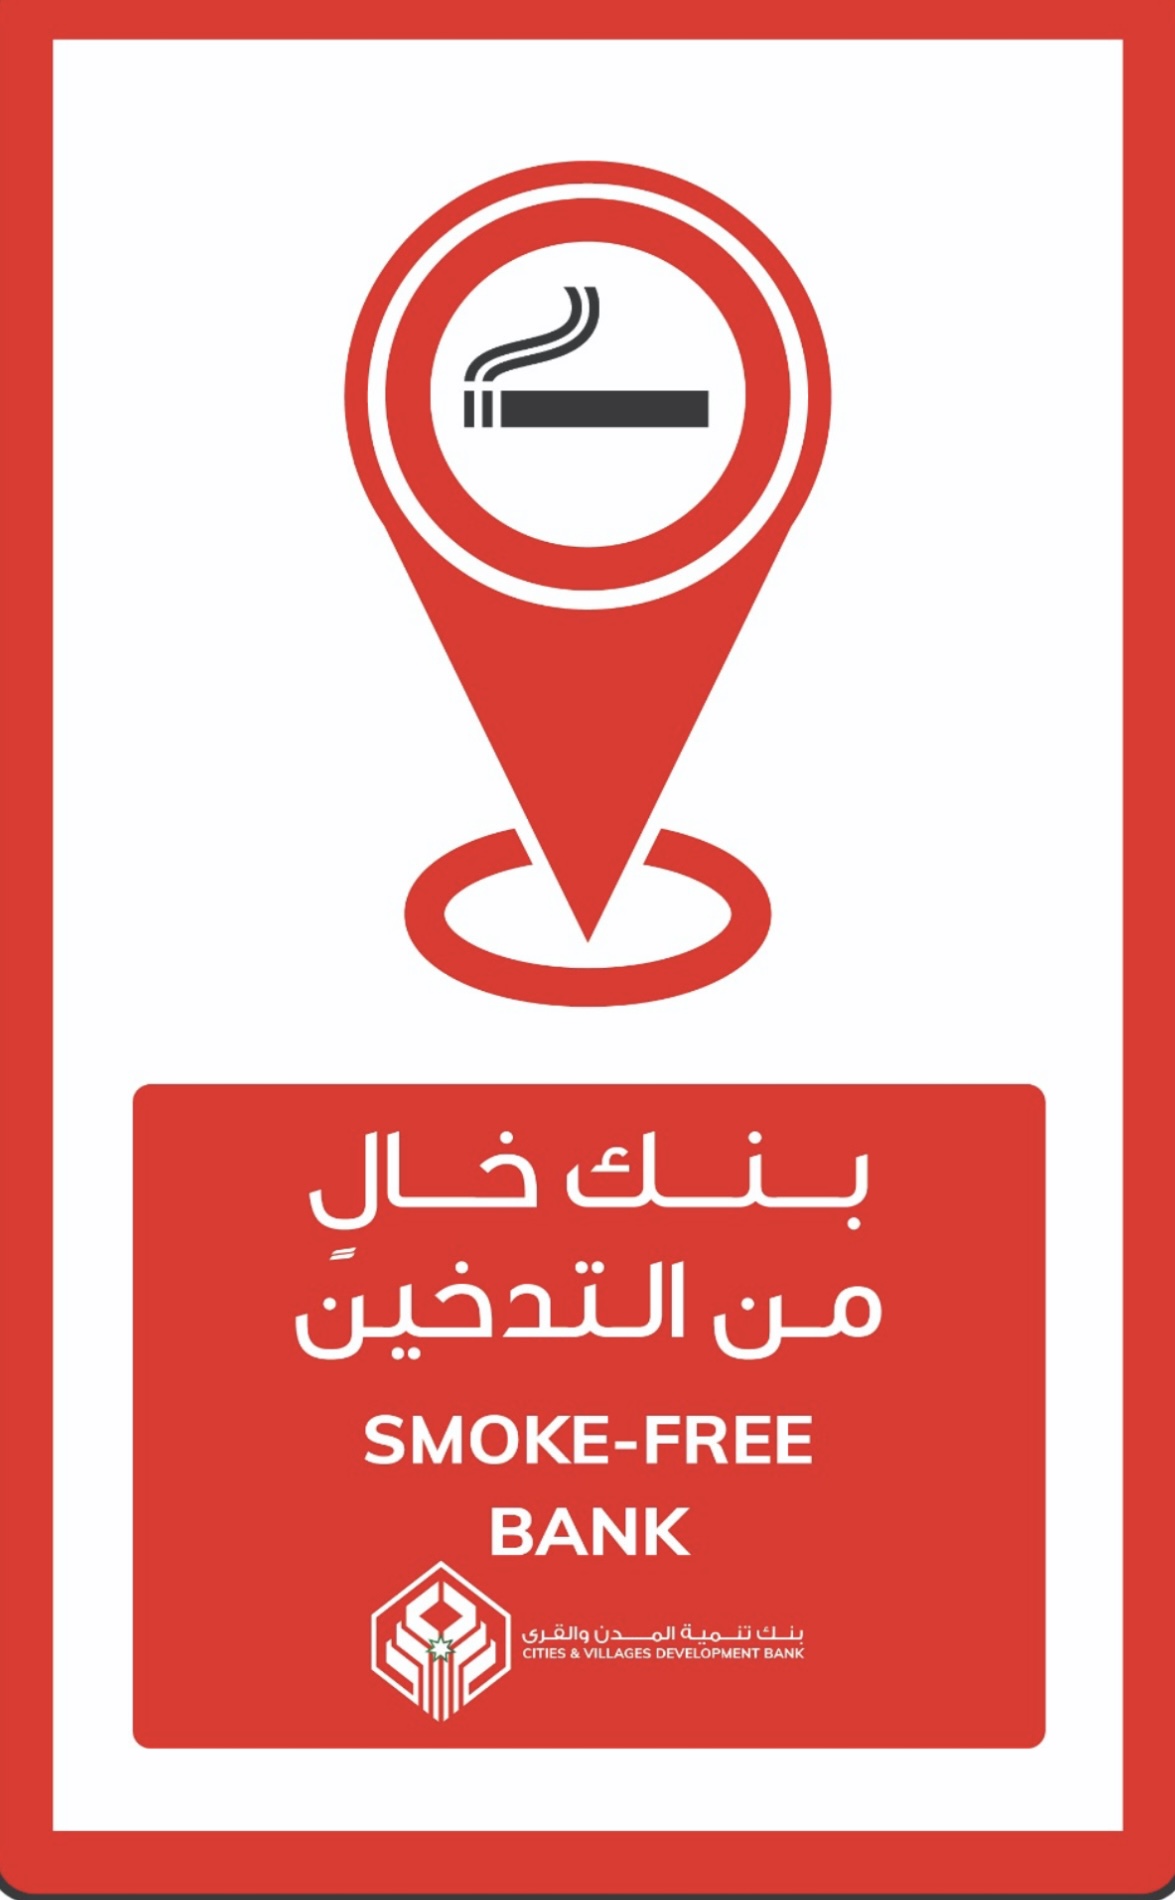 المدن والقرى يحظر التدخين في مرافقه